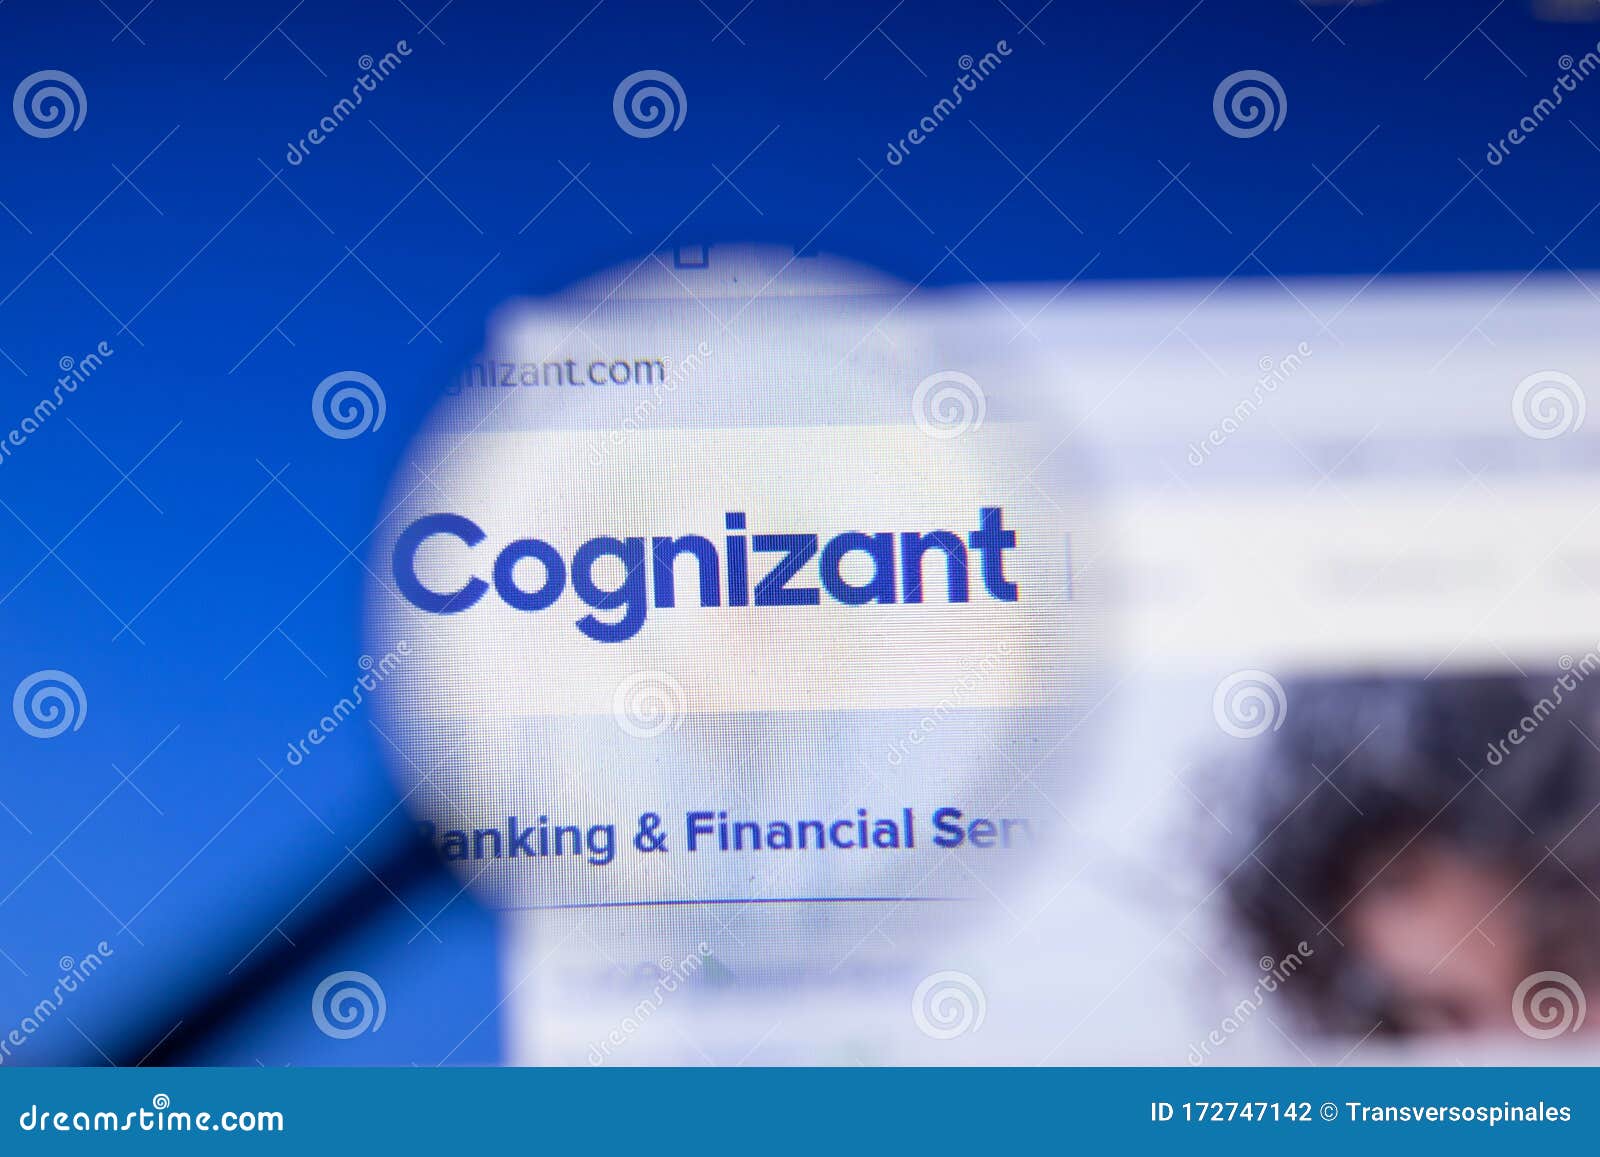 Cognizant company website deloitte vs accenture